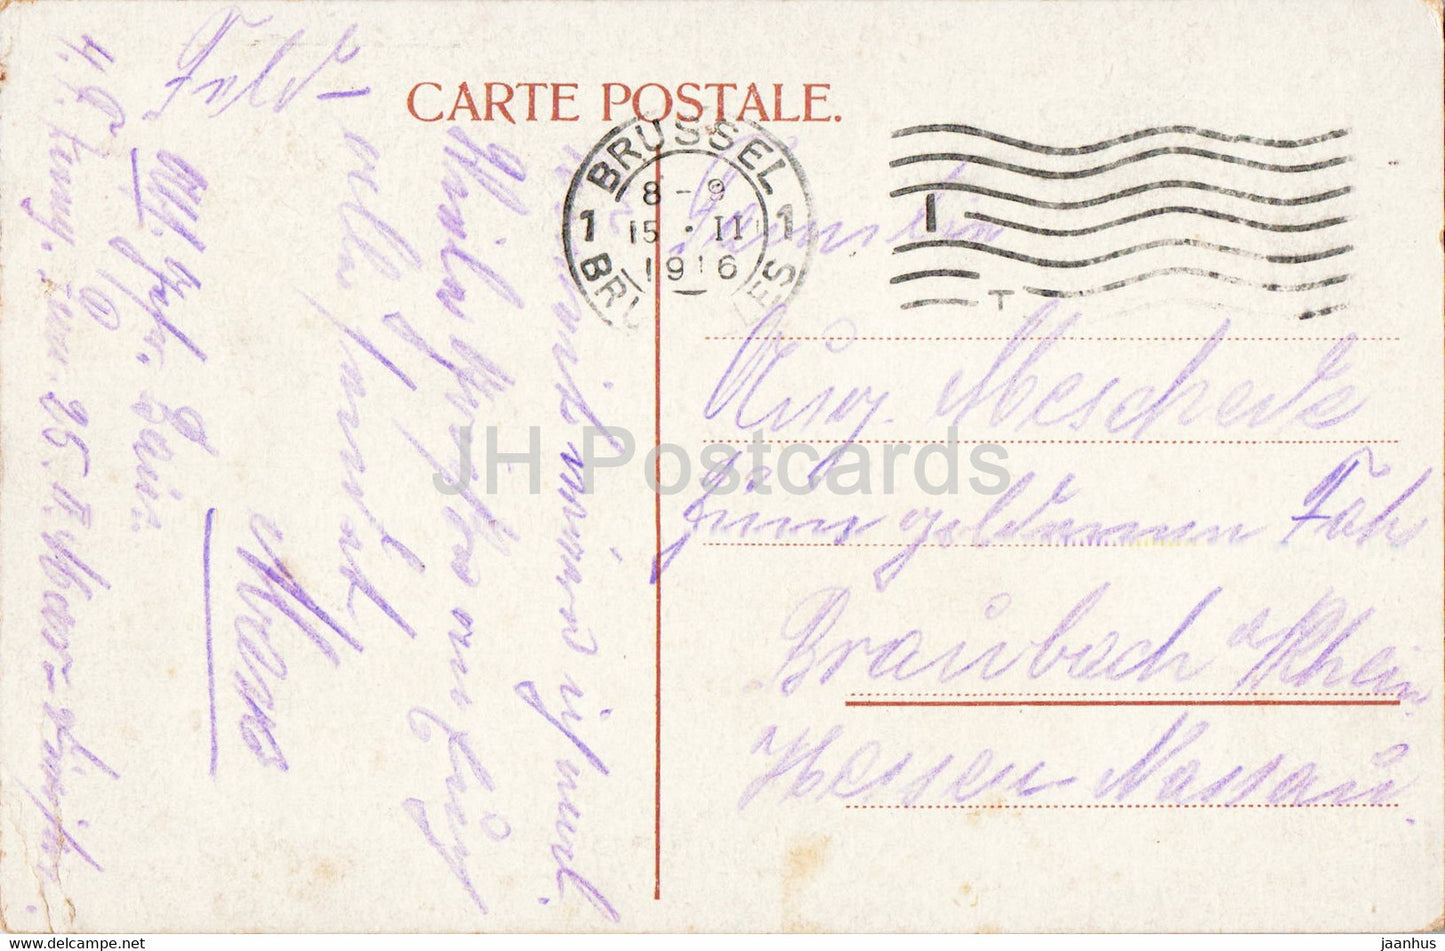 Bruxelles - Bruxelles - Grand Place - Maison du Roi et des Corporations - carte postale ancienne - 1916 - Belgique - occasion